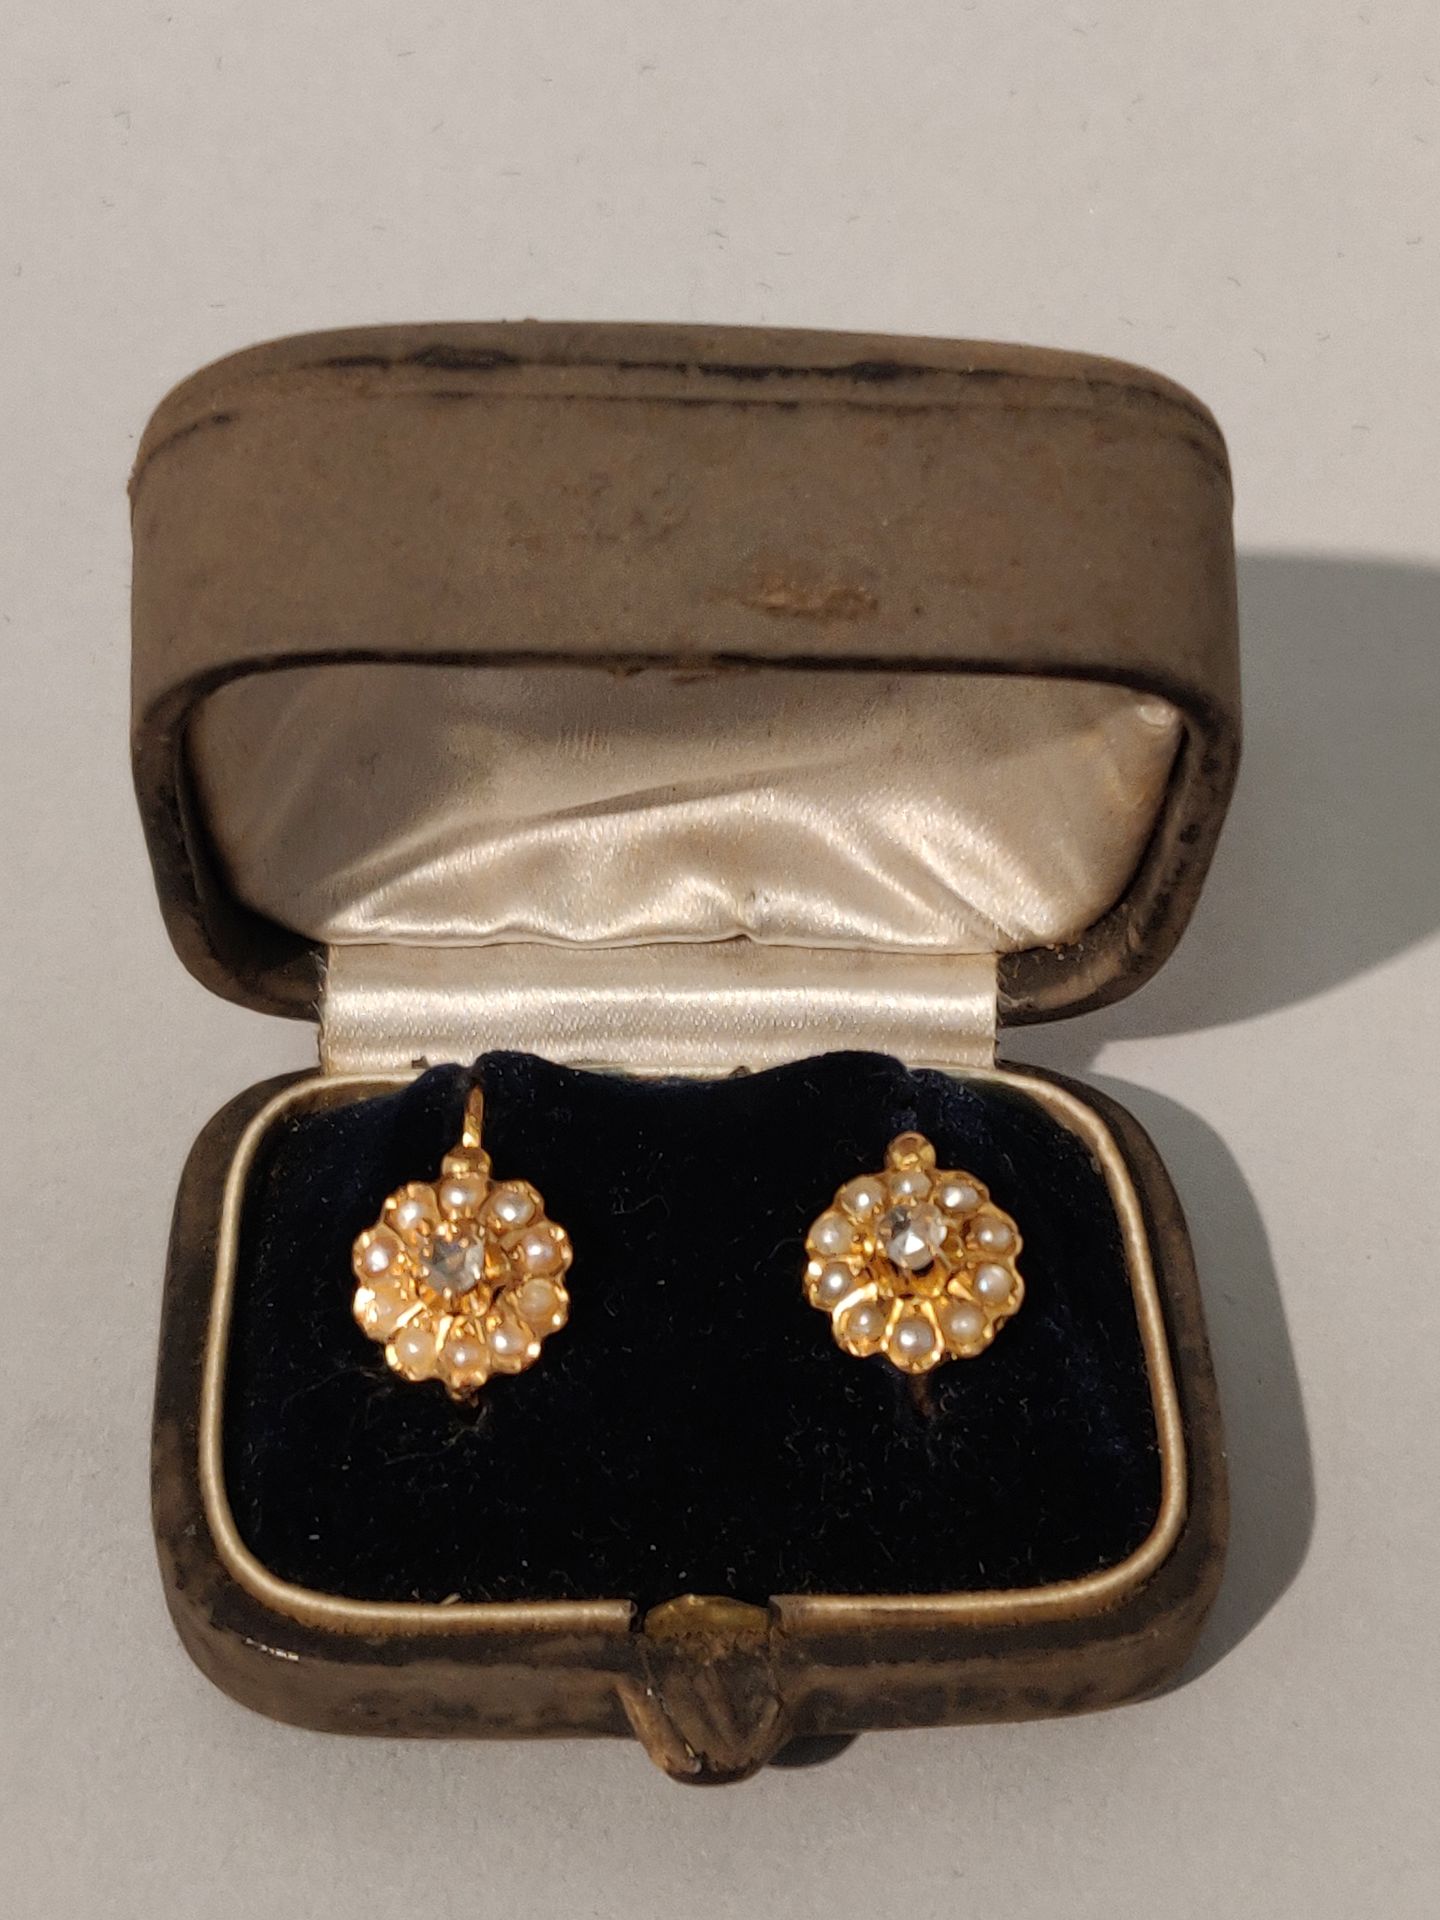 Null 一对黄金（750/°°）DORMEUS耳环，上面镶嵌着珍珠，中心有一颗钻石。毛重：2.1克。在他们的案例中